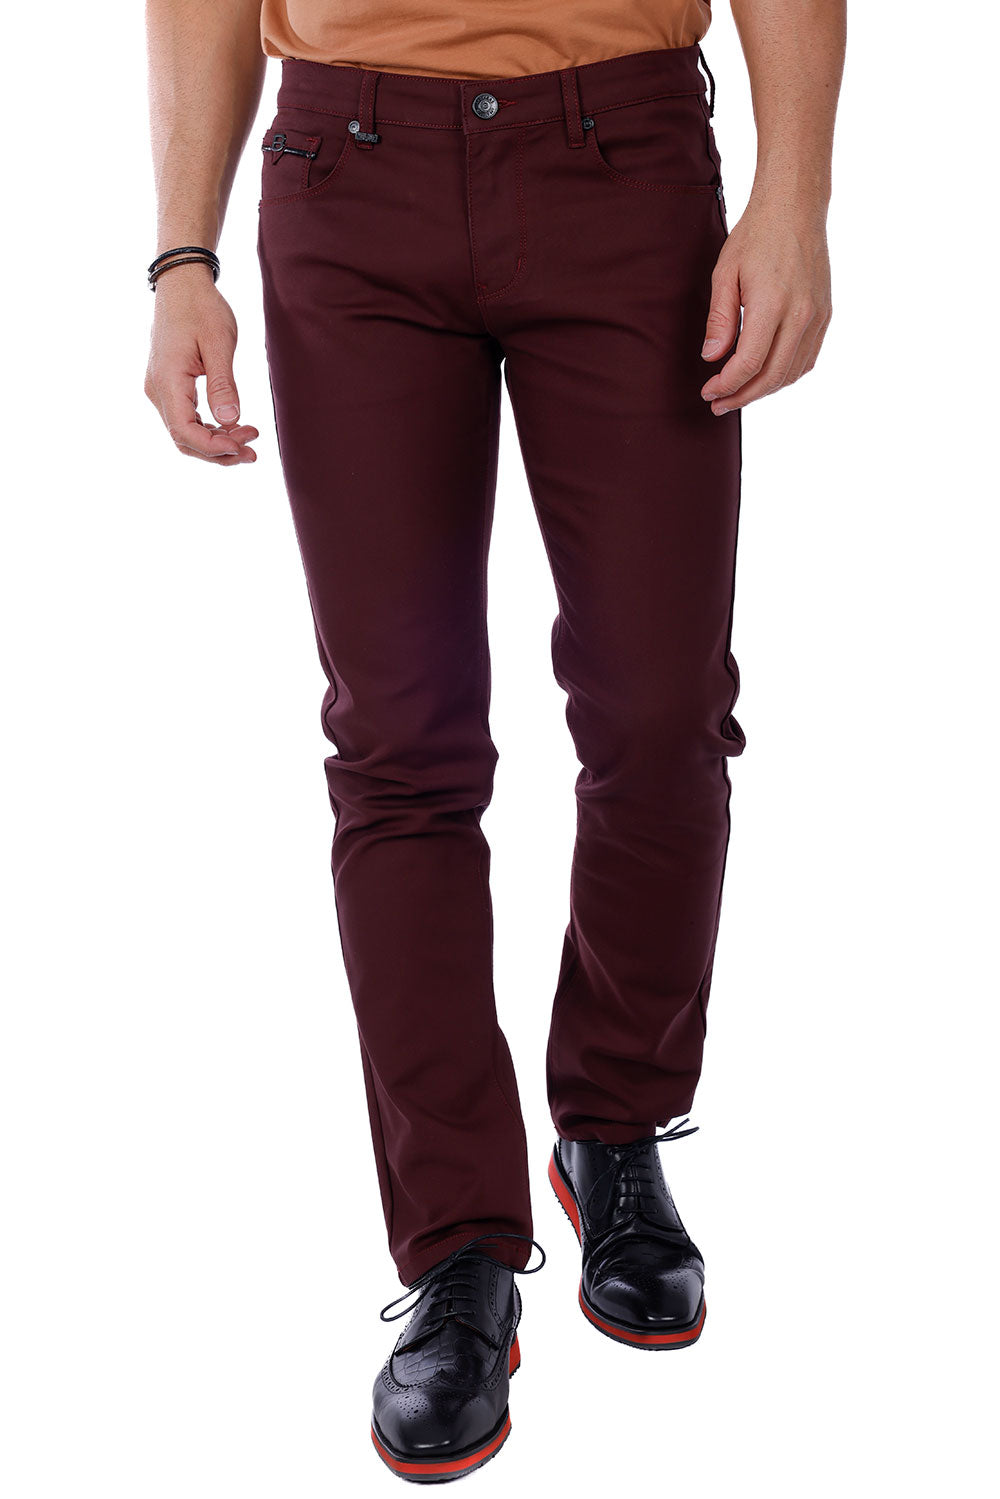 Barabas Men's Slim Fit Solid Color Plain Premium Jeans 3CPW32 Burgundy